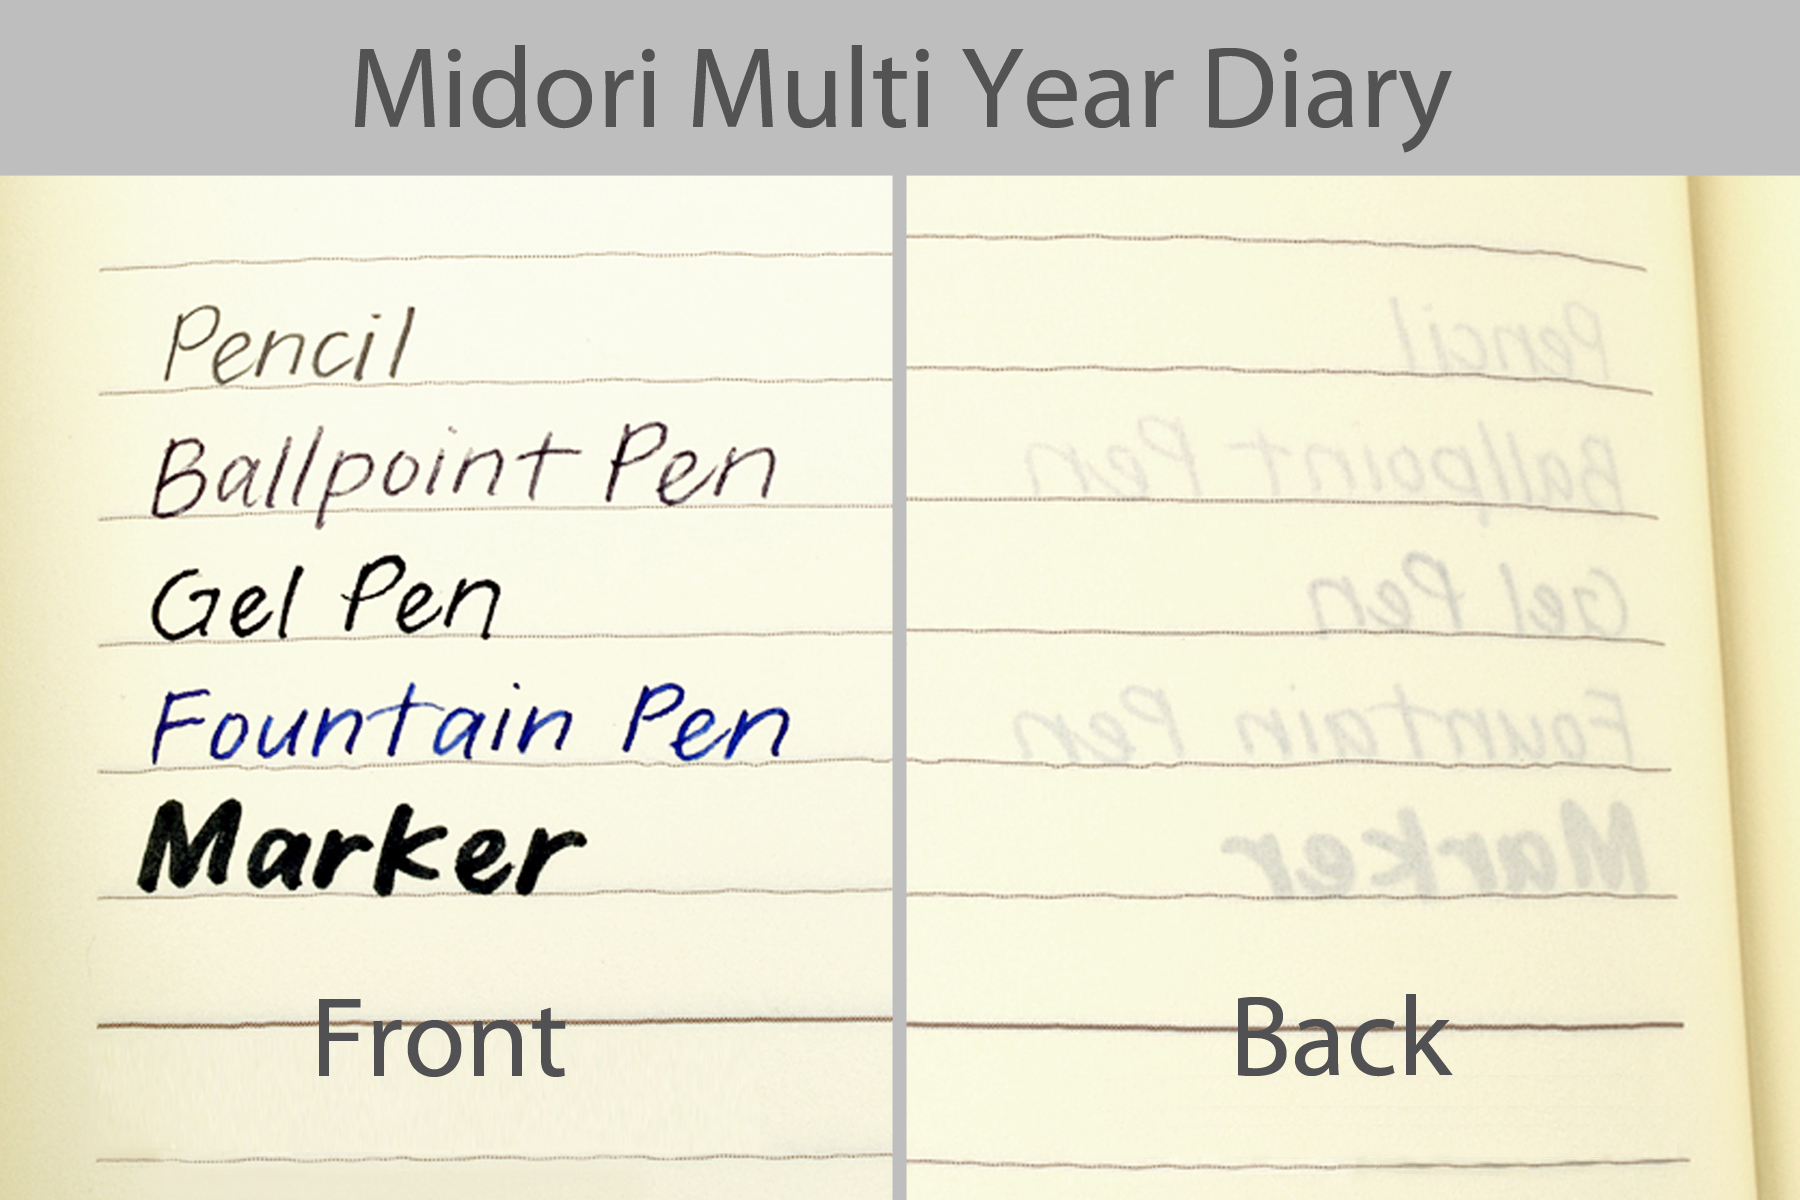 Midori MD Multi Year Diary writing sample.